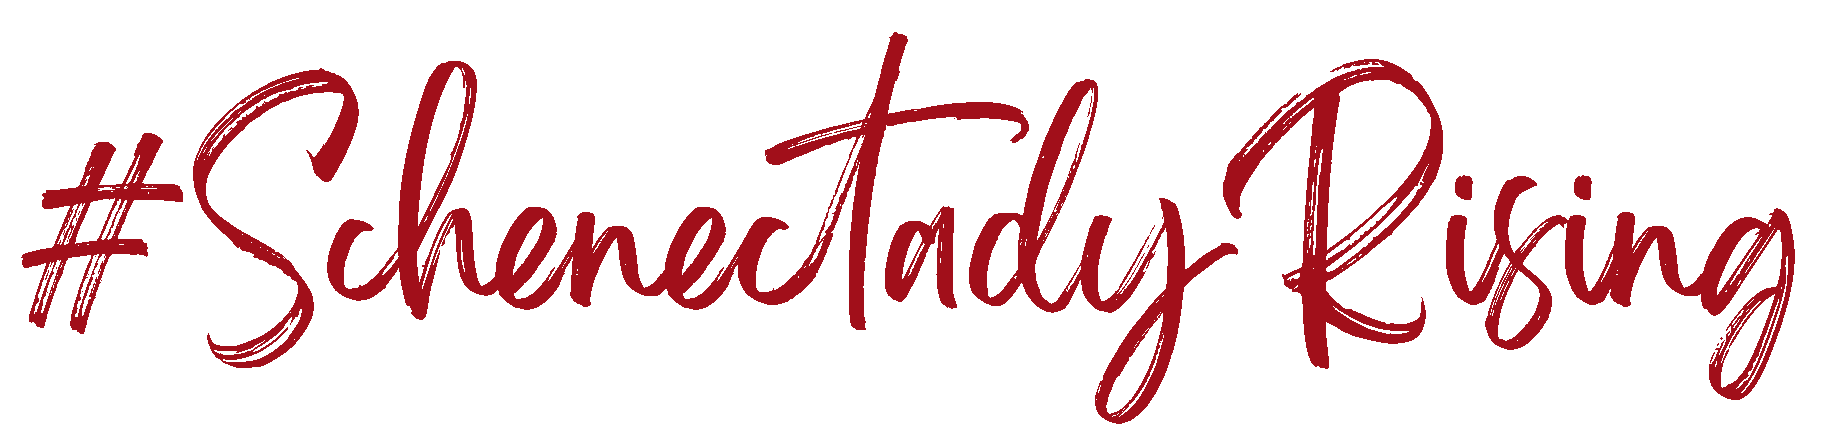 #SchenectadyRising logo